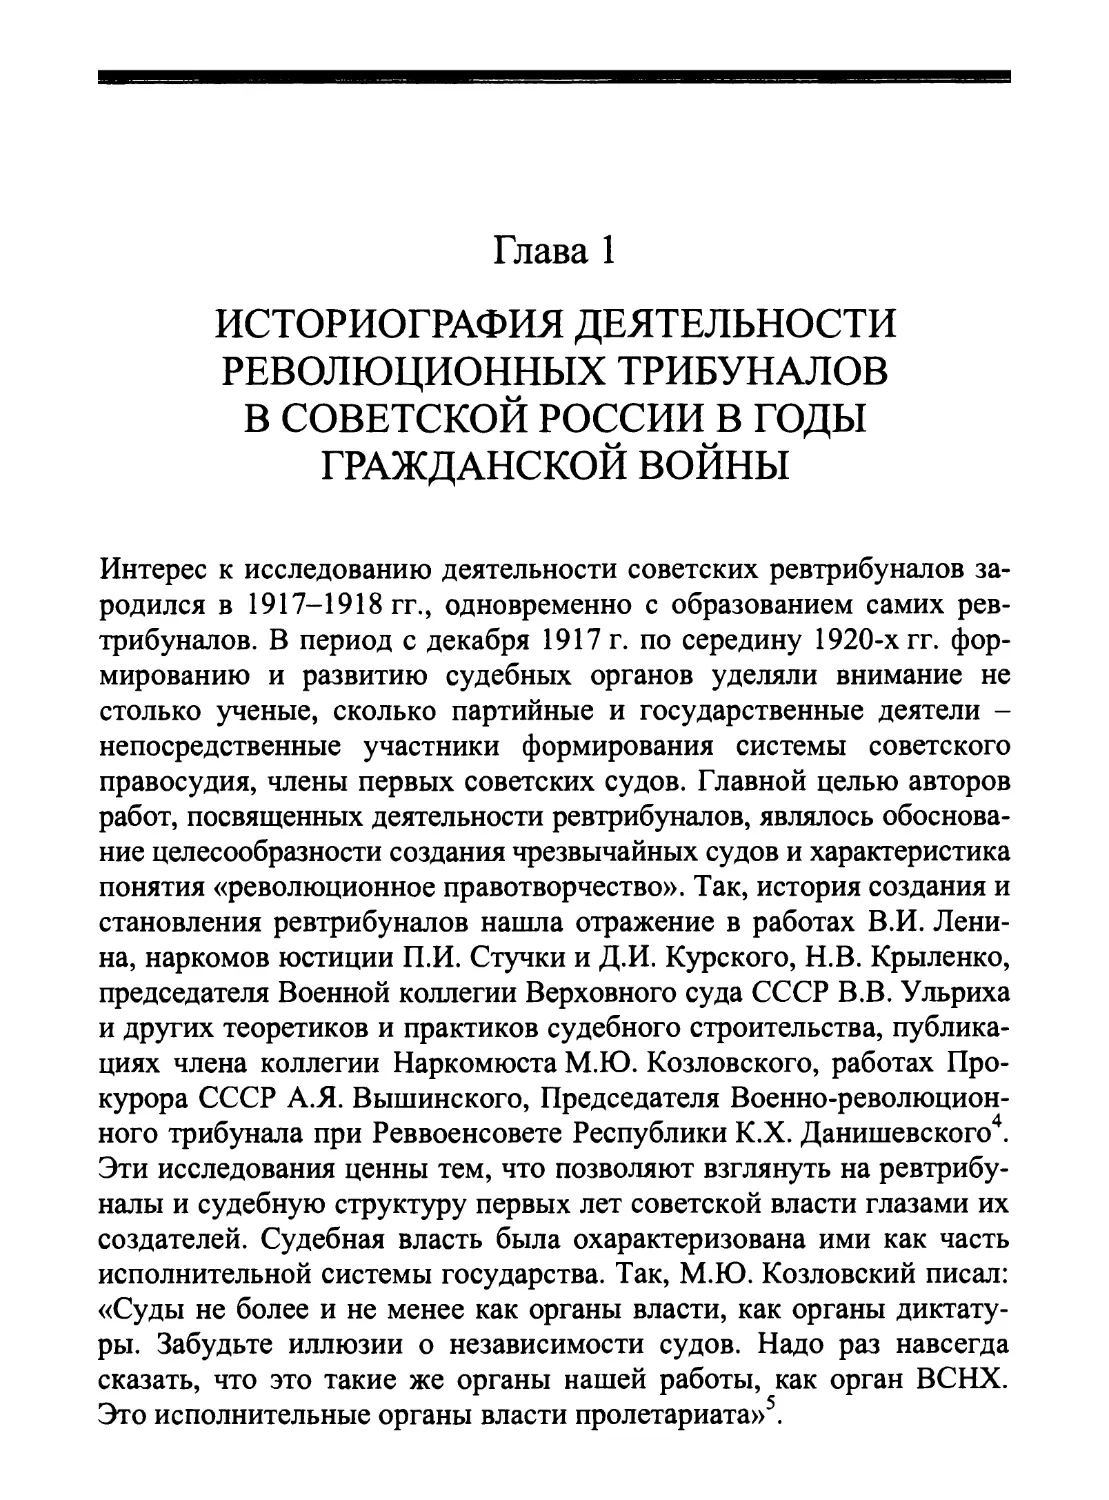 Глава 1. Историография деятельности революционных трибуналов в Советской России в годы Гражданской войны